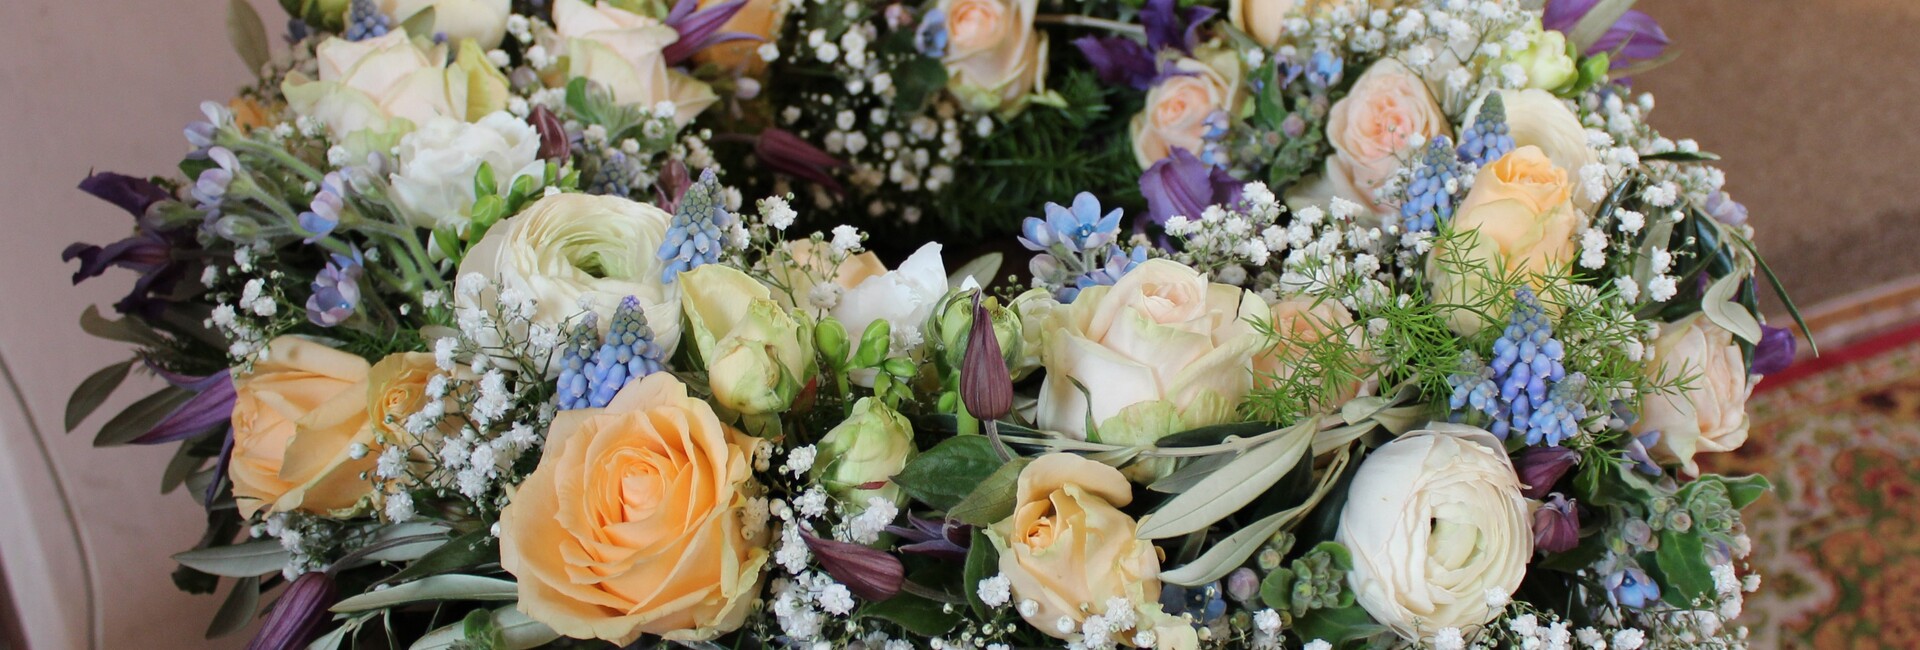 Ein stimmiger Blumenstrauß aus weißen, pfirsichfarbenen und blauen Blüten